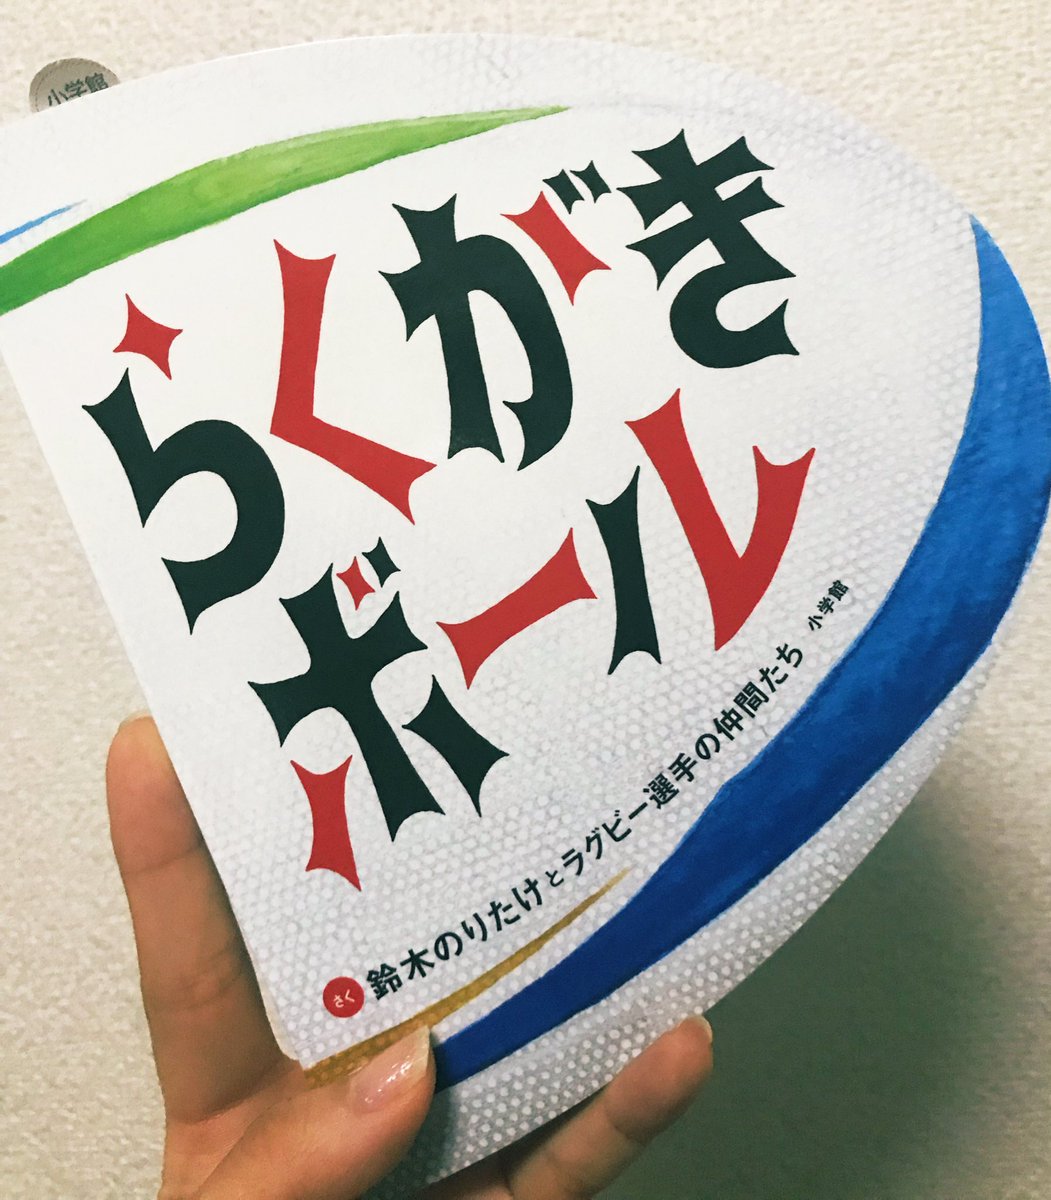 長澤 彩子 アナウンサー 友人から貰った絵本 ラグビーワールドカップが日本で開催される今年 選手会が中心となりラグビーを身近に感じてもらおうと作られたものです 色んな絵本の読み聞かせをしているけれどこの形は初めて イラストが本格的で